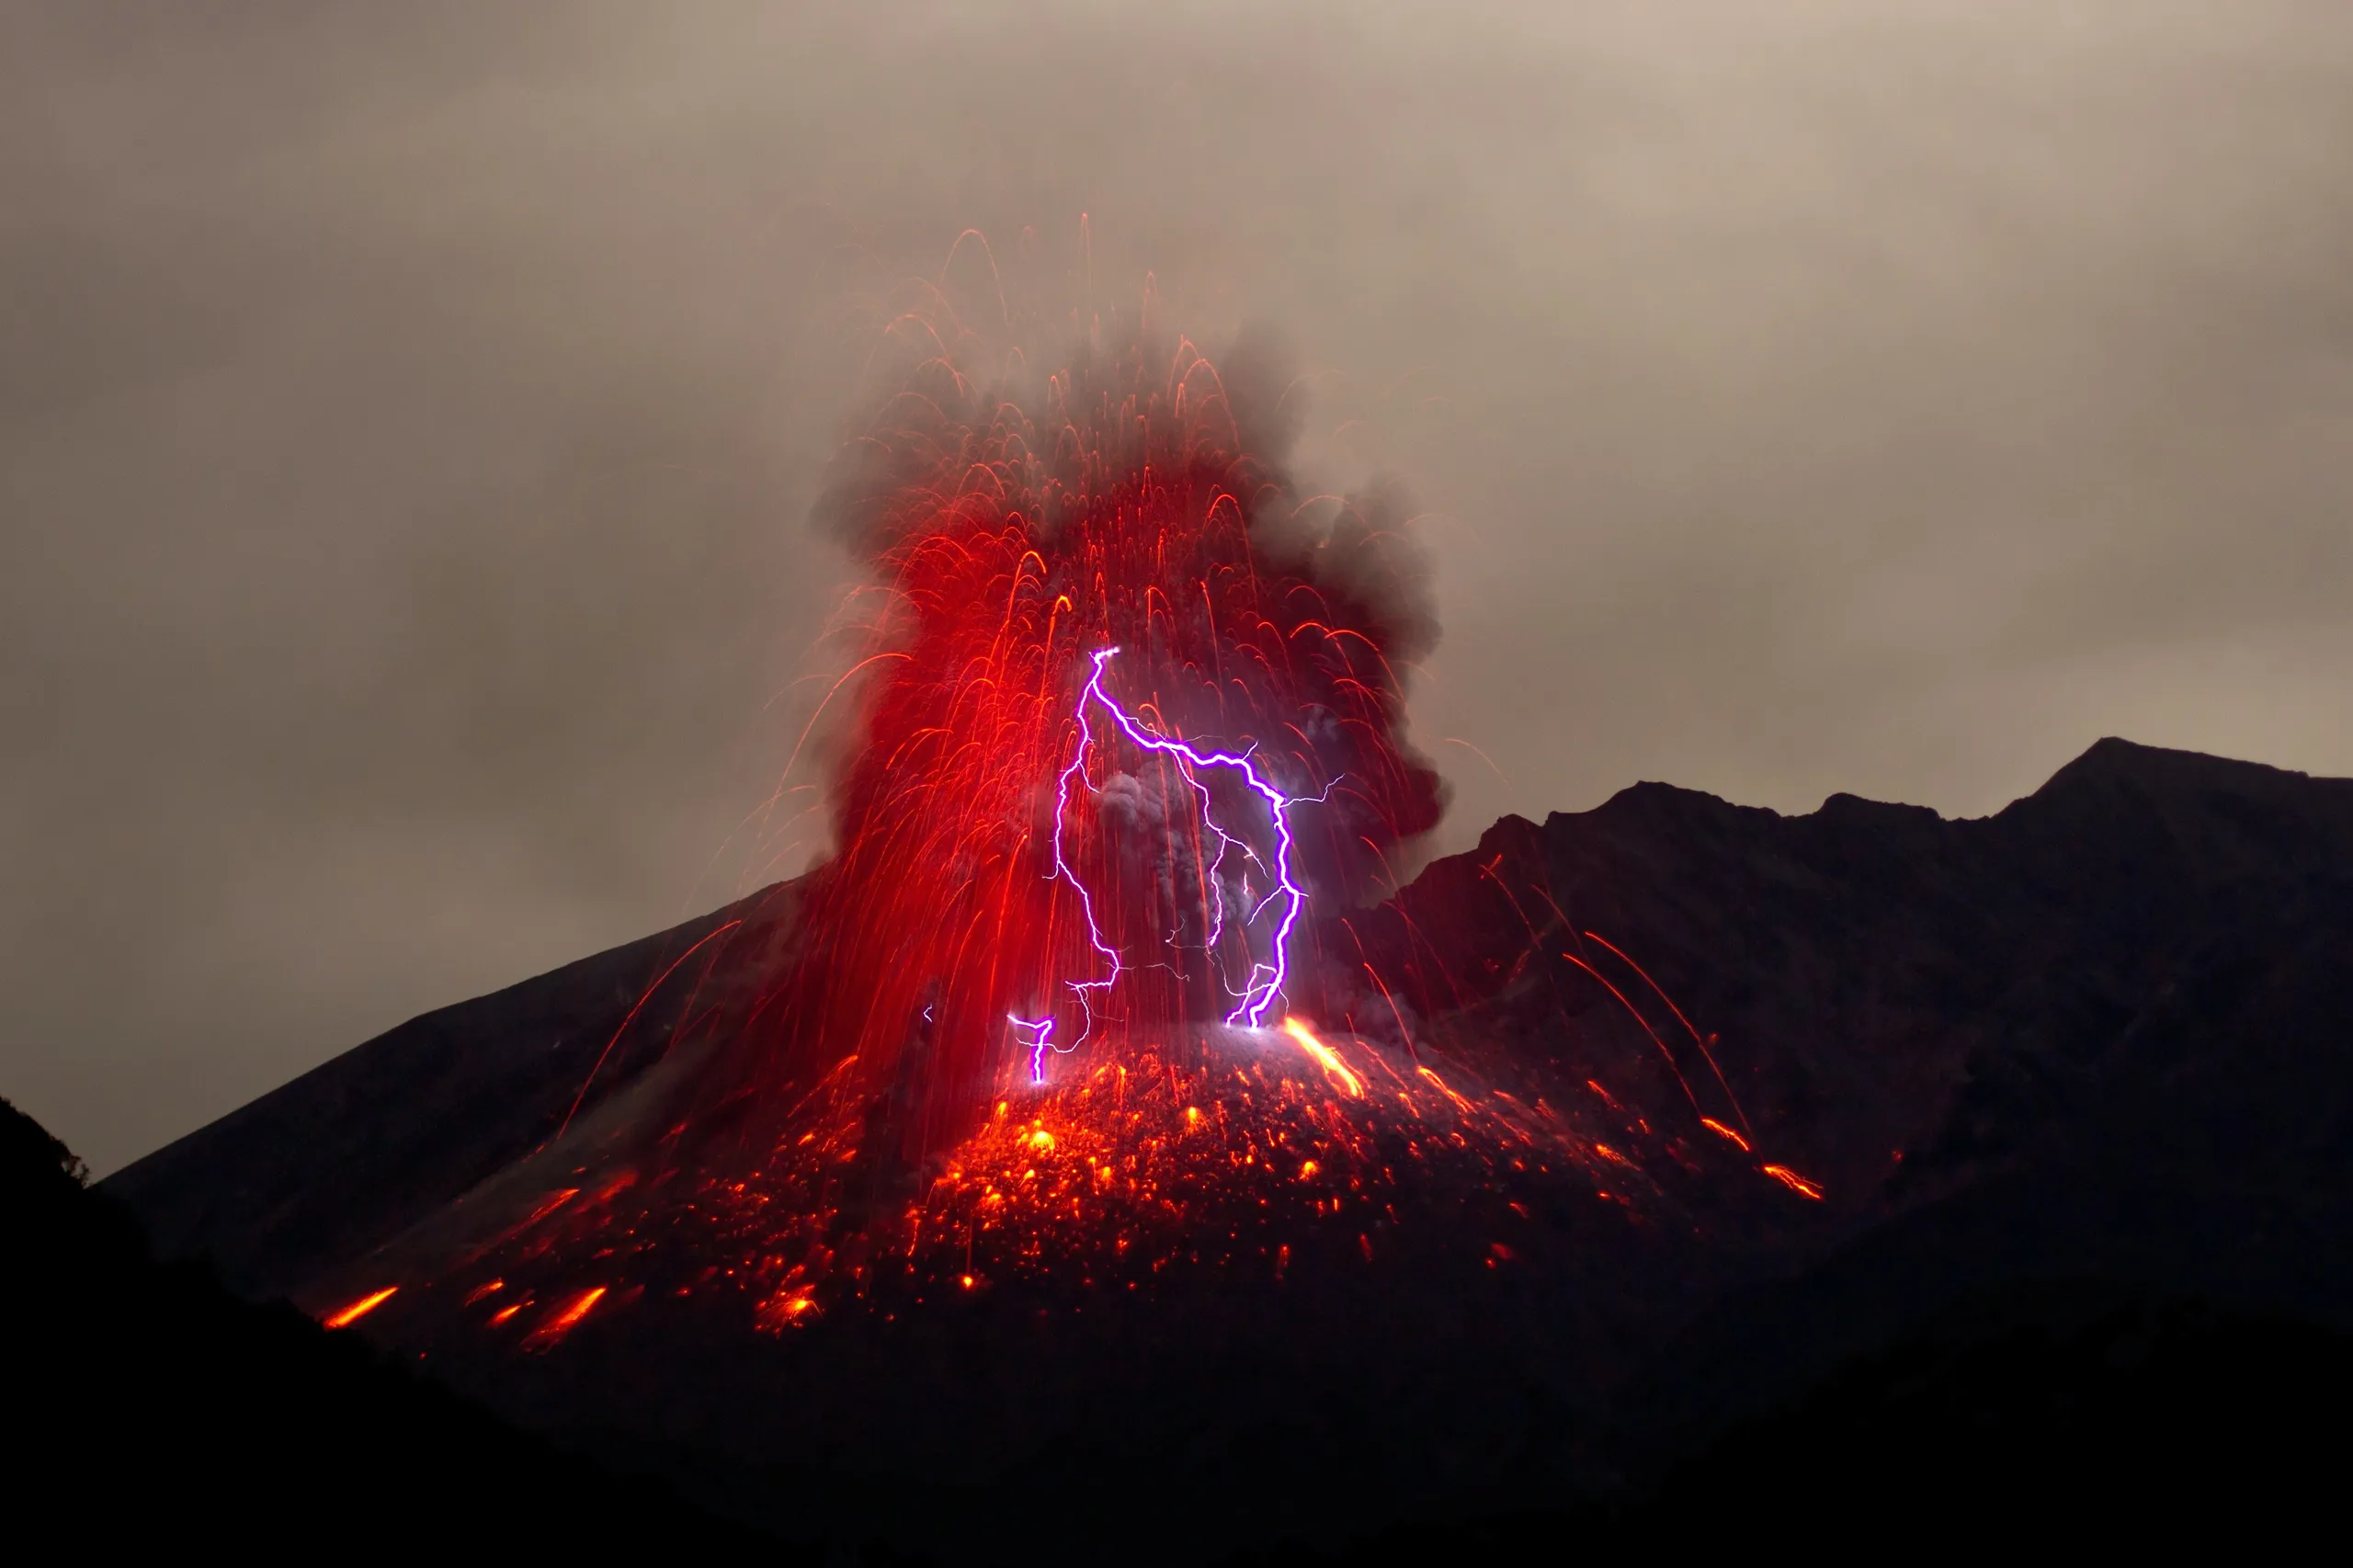 Hình nền đẹp chất lượng cao cho iPhone, iPad và Mac chủ đề núi lửa hùng vỹ